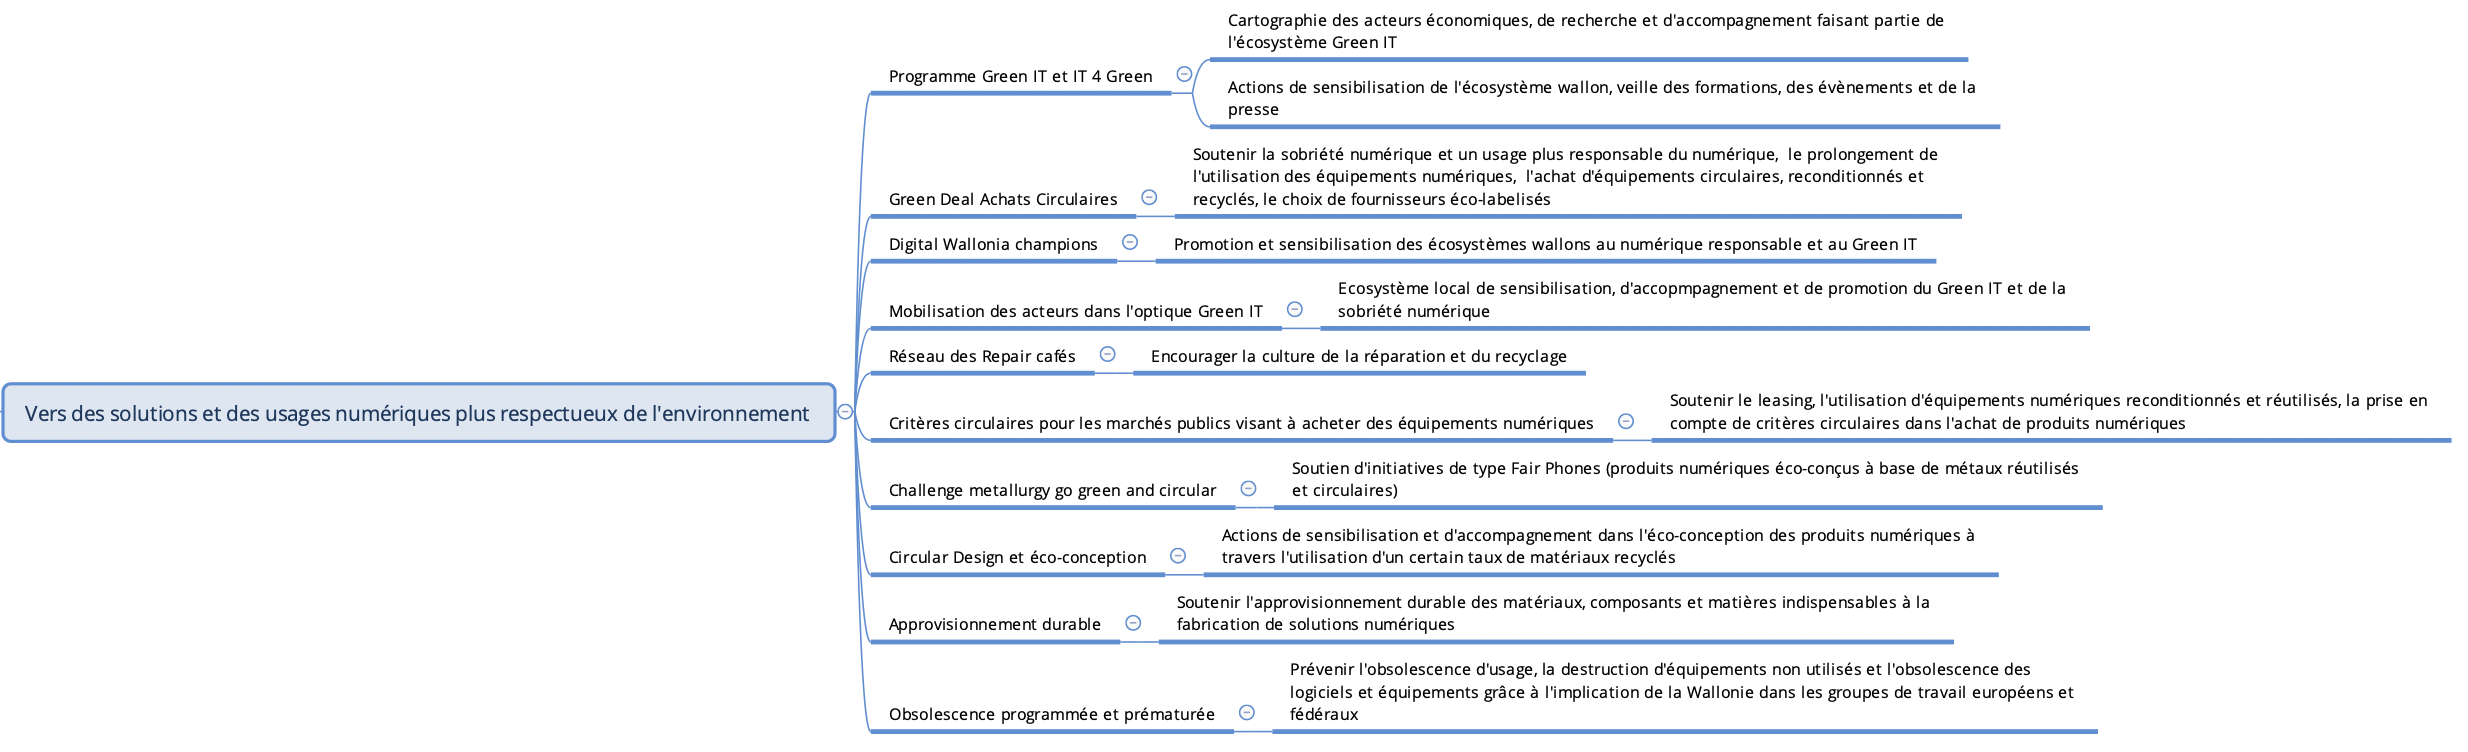 Mécanismes publics pour soutenir les solutions et usages numériques responsables (étude AdN pour Digital Wallonia)